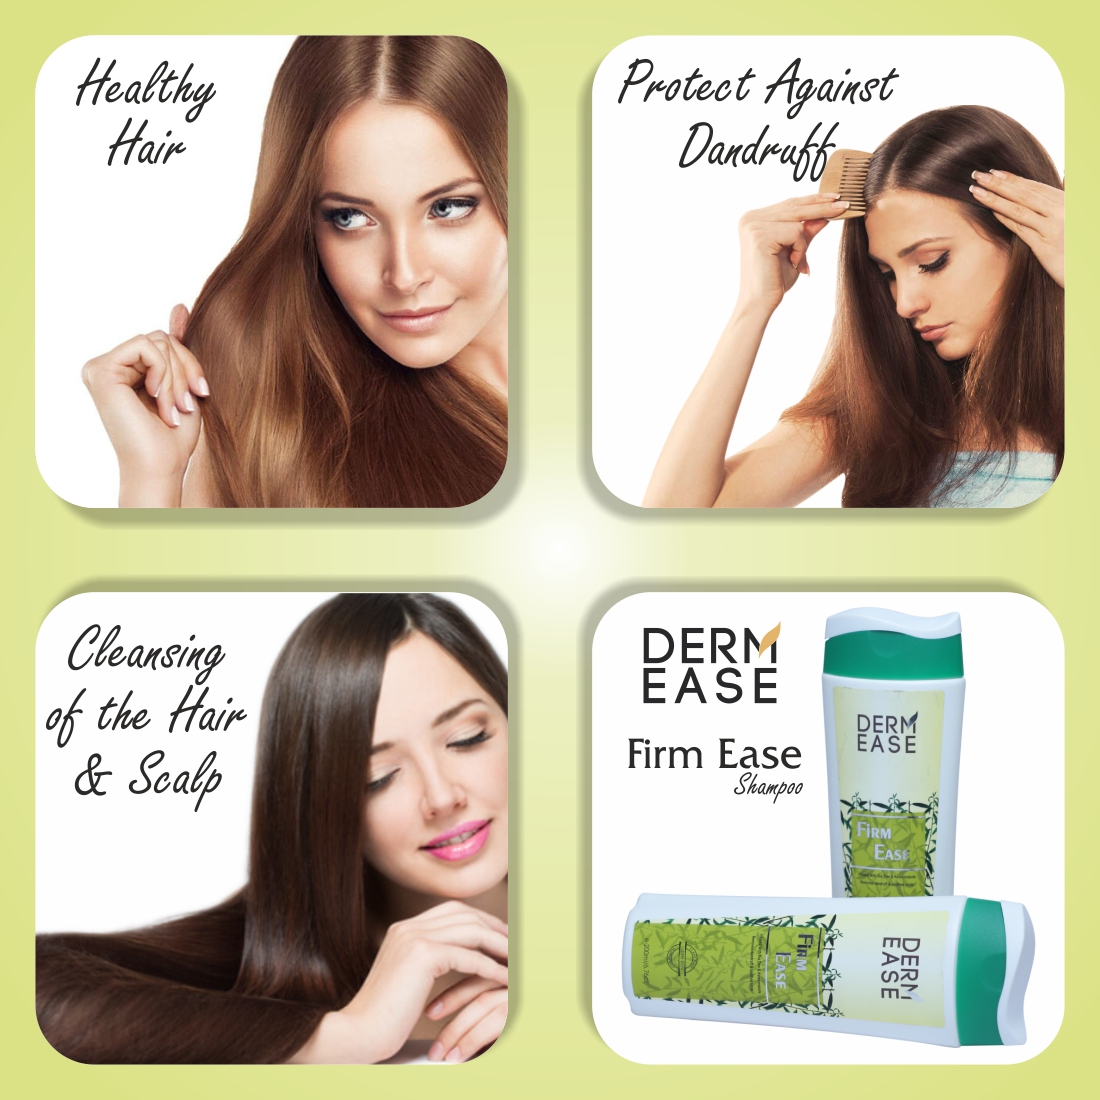 DERM EASE Firm Ease Hair Shampoo